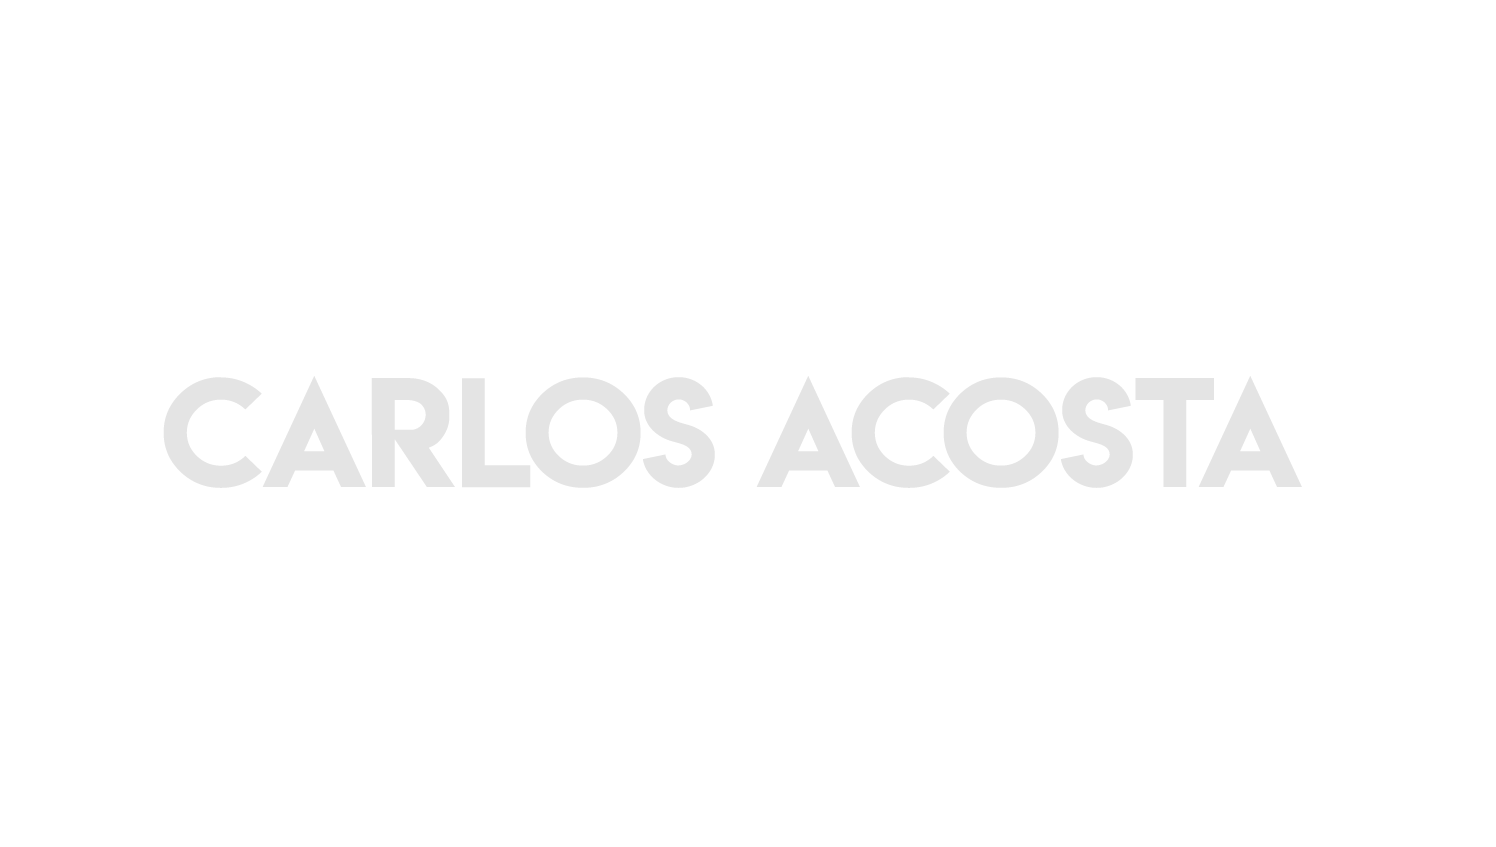 Carlos Acosta